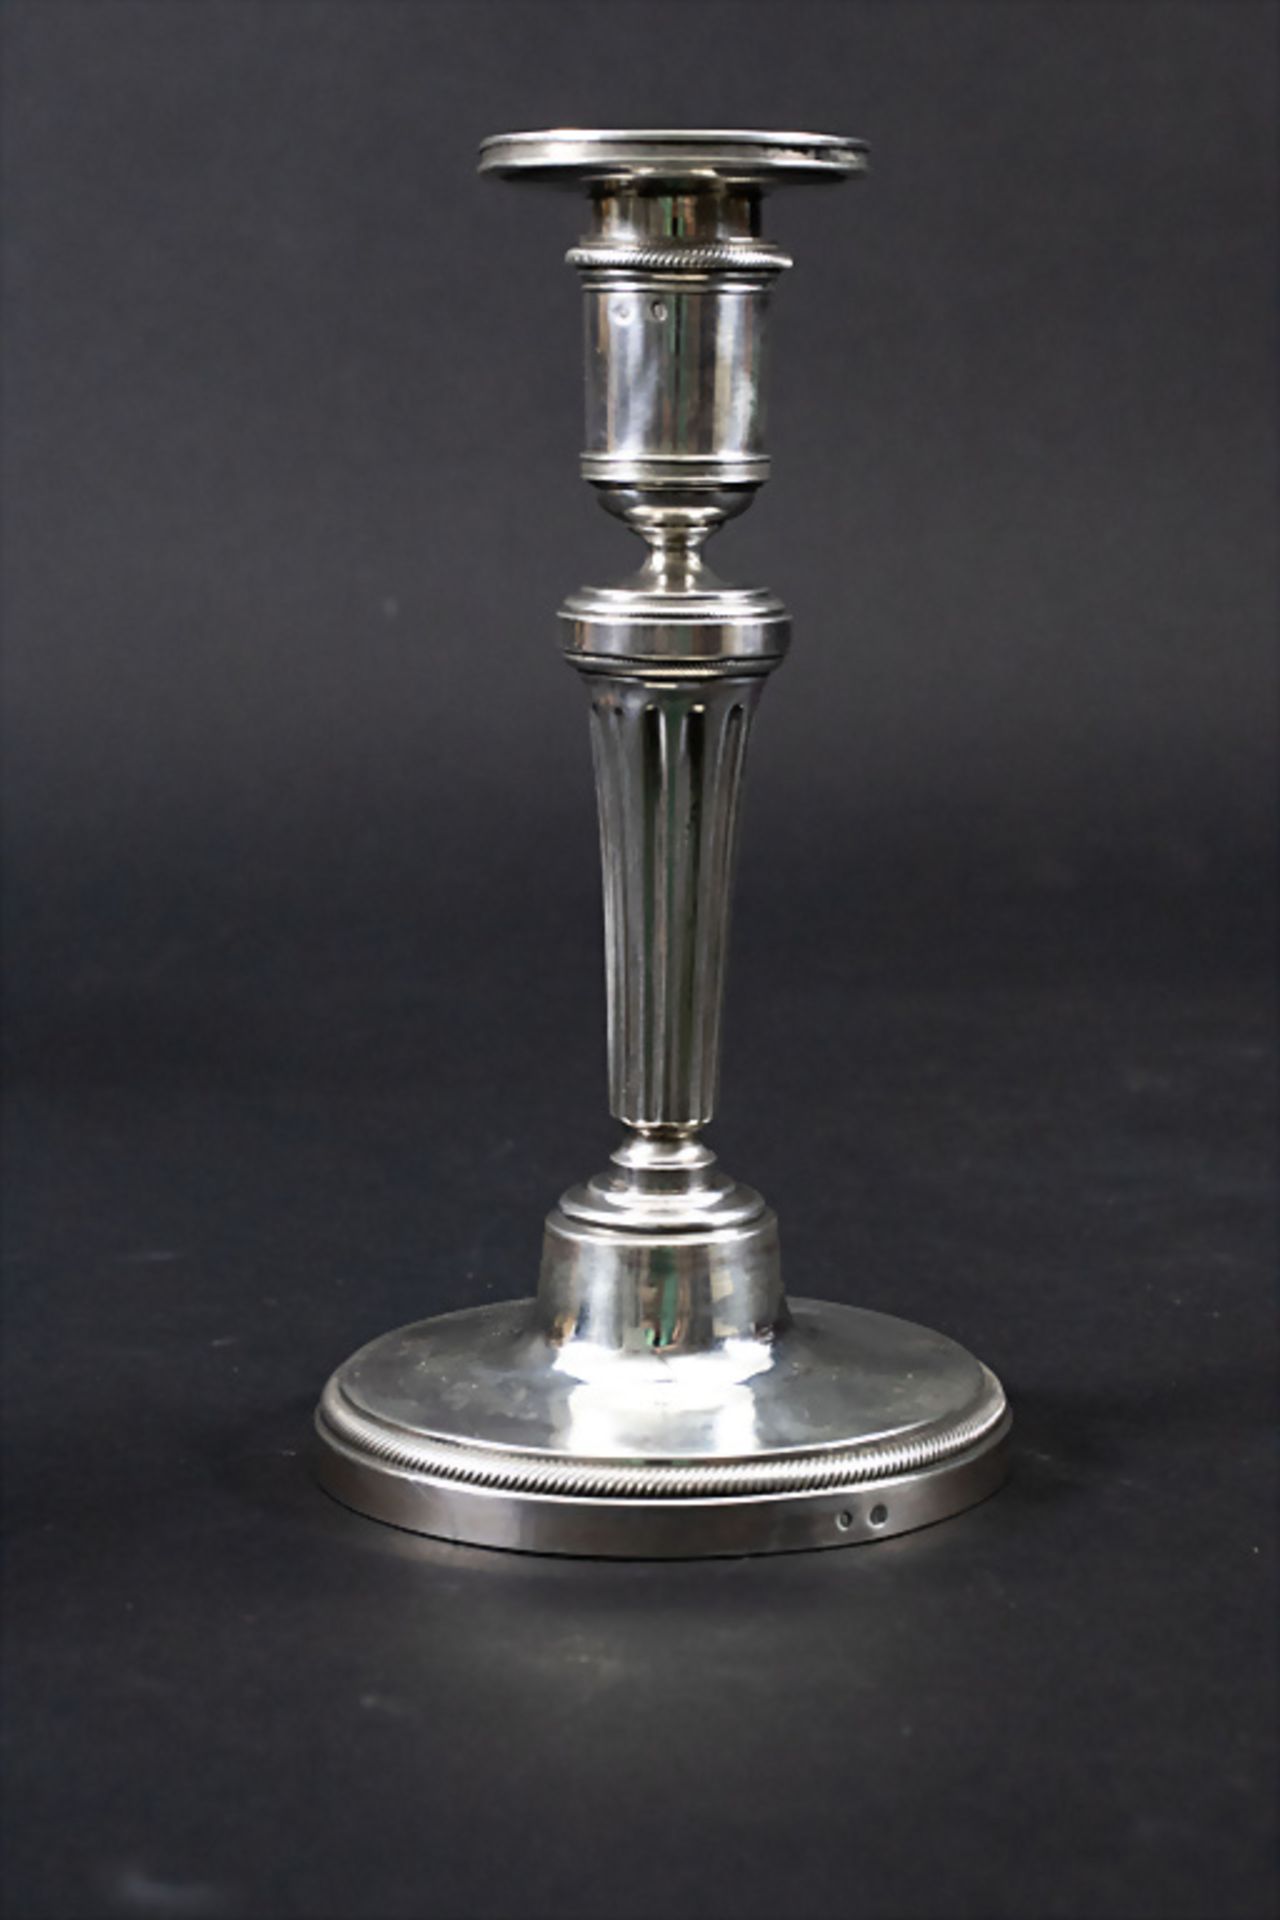 Louis Seize Reiseleuchter / A silver travel candle holder, Jean Pierre Charpenat, Paris, 1789